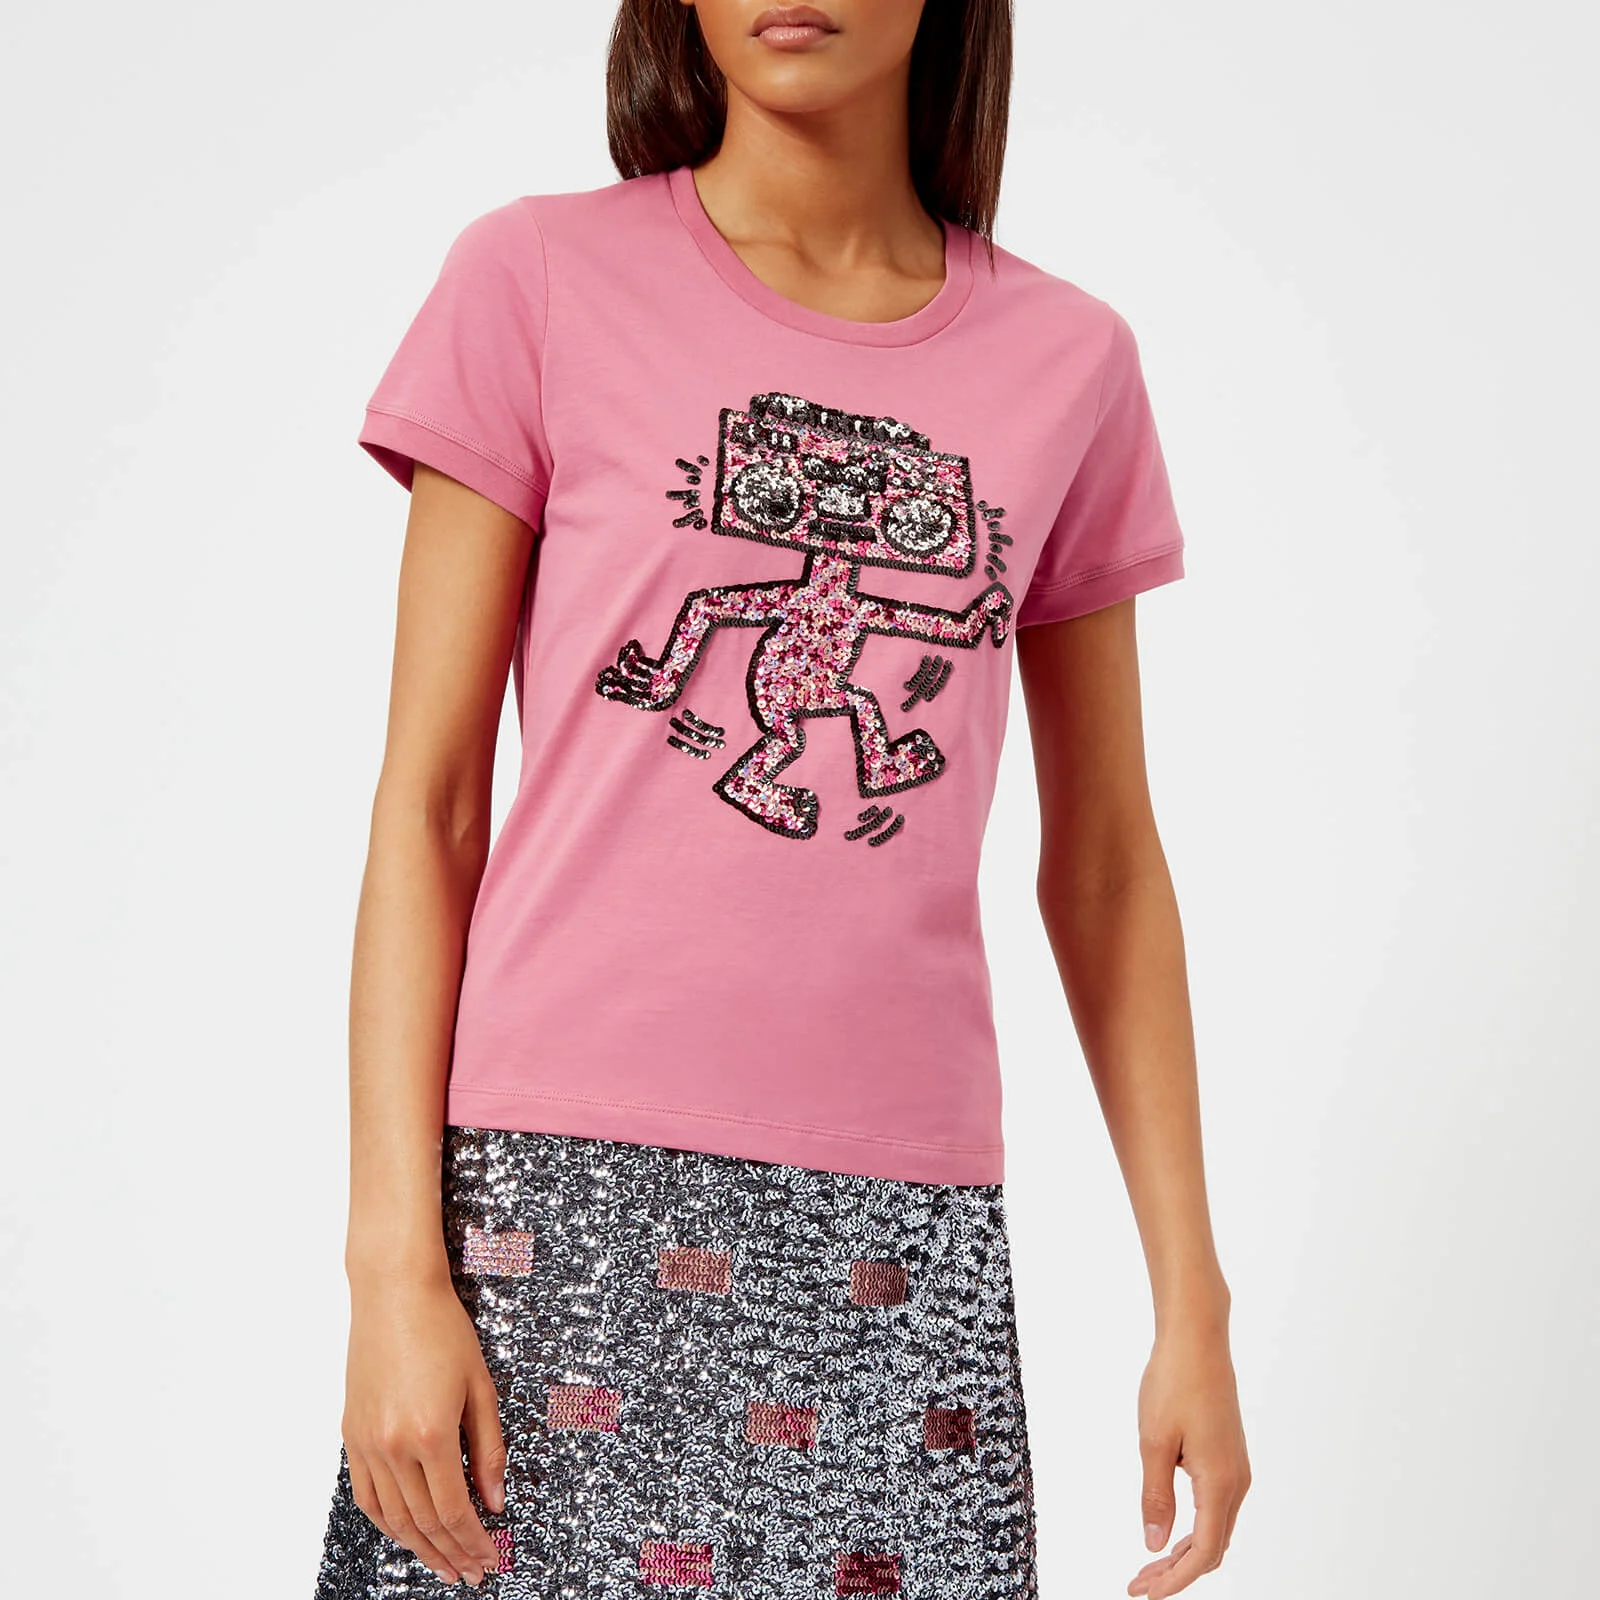 Coach 1941 Women's Coach X Keith Haring Embellished T-Shirt - Fuchsia Image 1